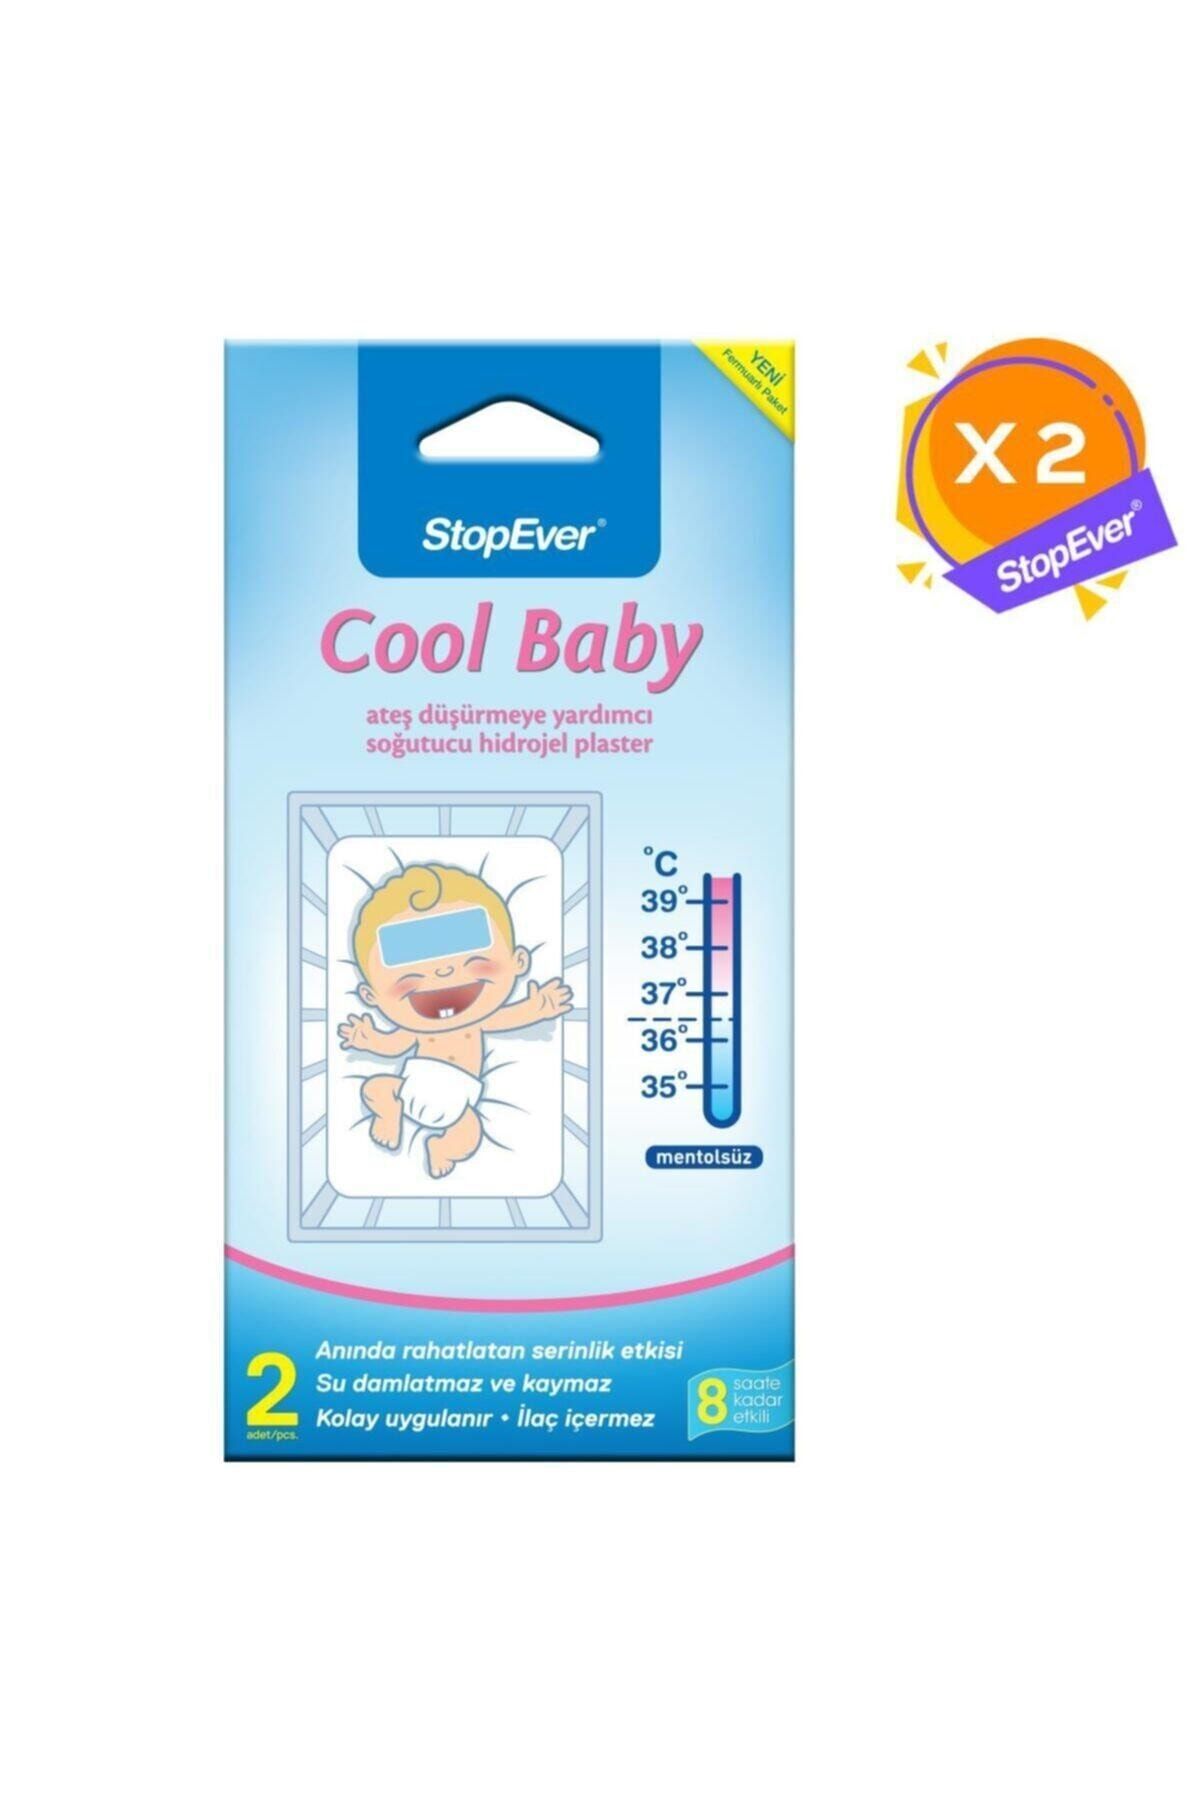 StopEver Cool Baby Ateş Düşürmeye Yardımcı Soğutucu Hidrojel Plaster - 2 Adet